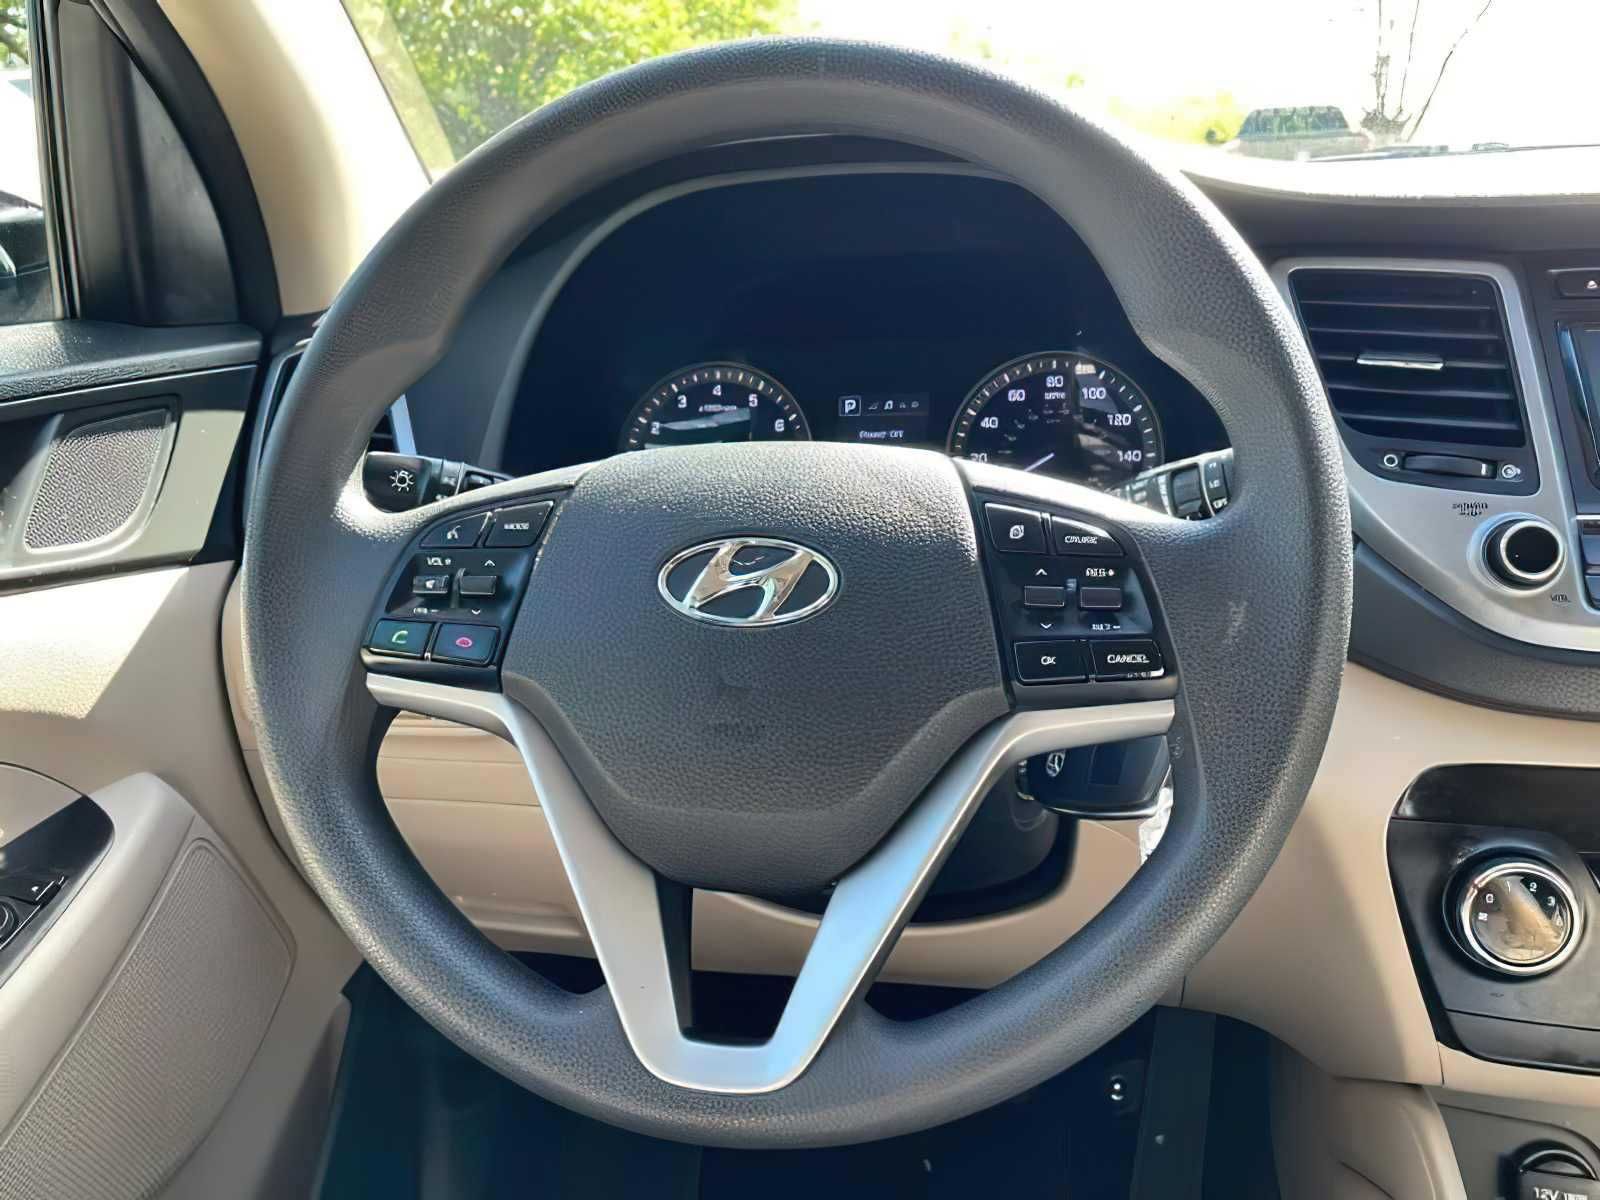 2017 Hyundai Tucson